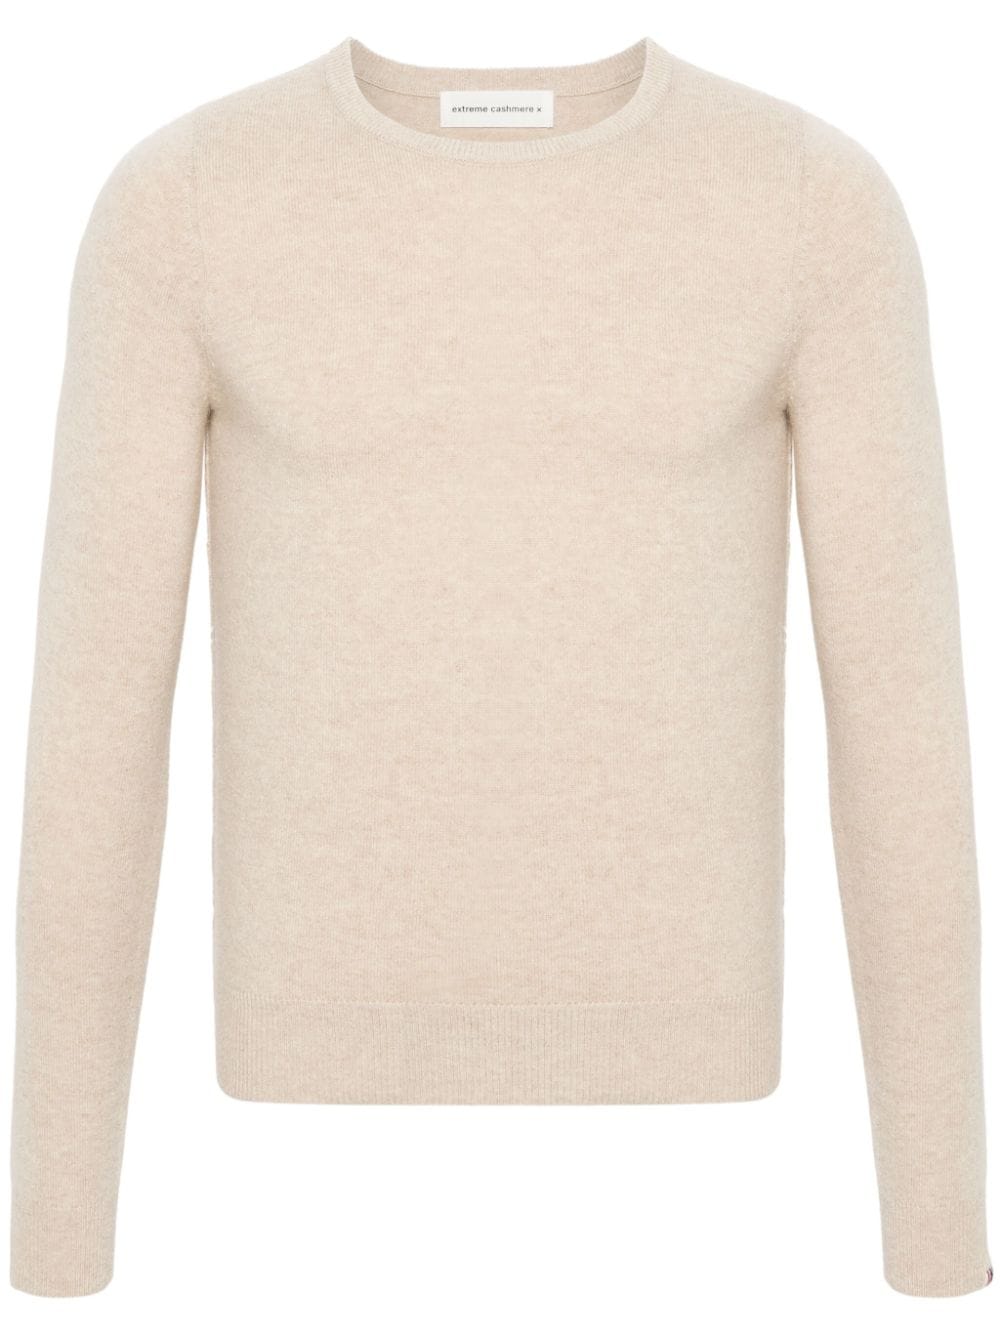 extreme cashmere No 41 slim-cut jumper - Neutrals von extreme cashmere